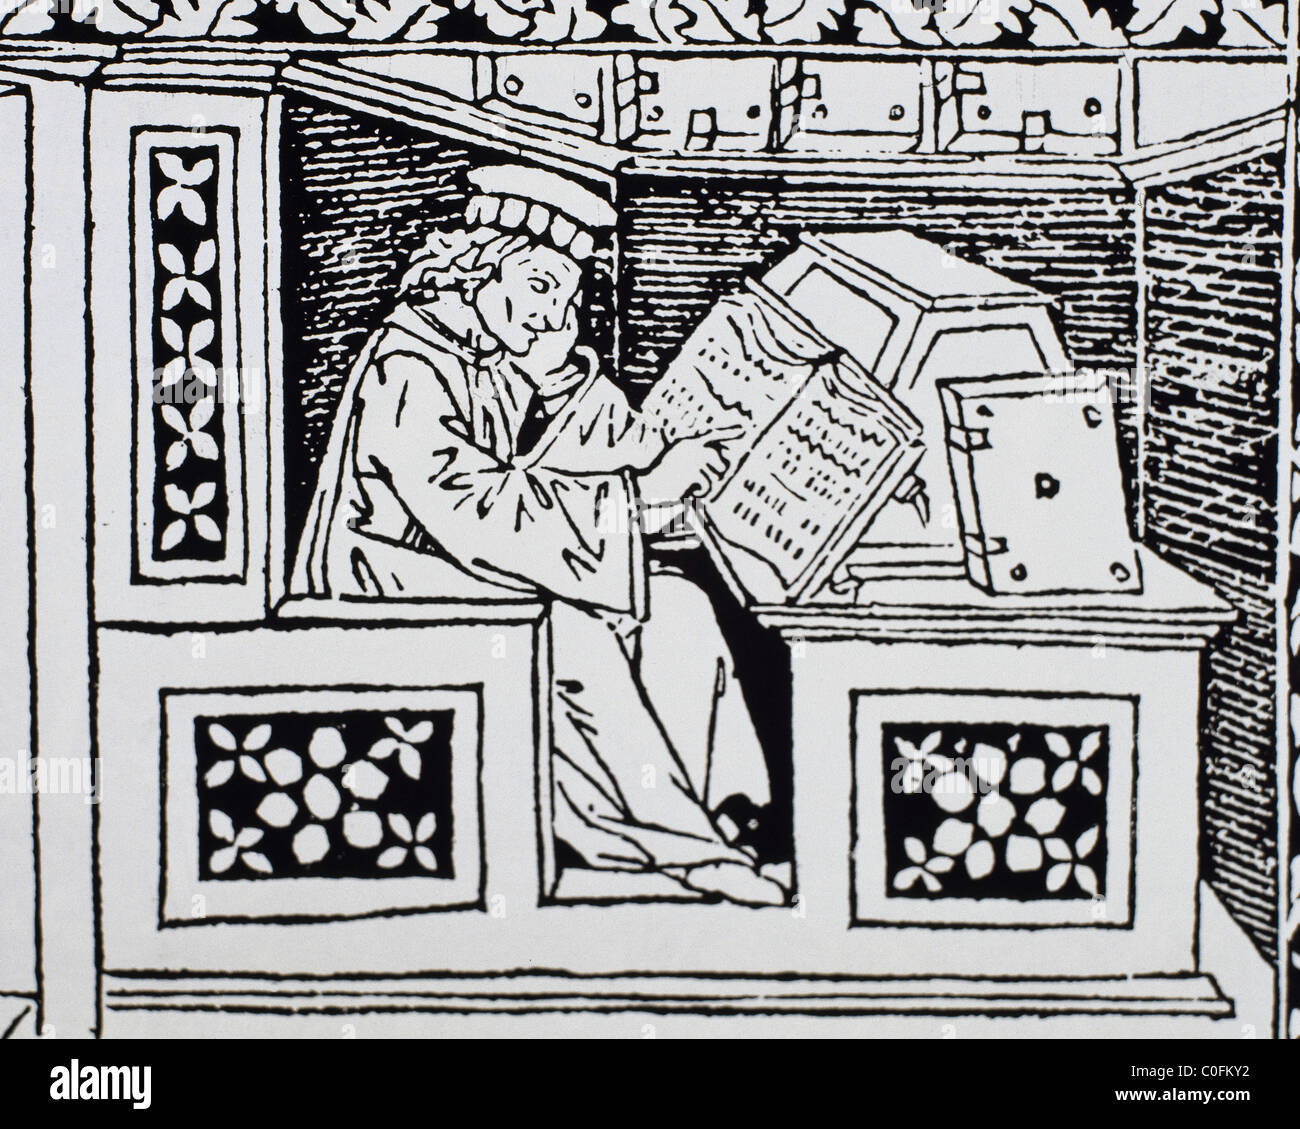 Mönch an seinem Schreibtisch. 15. Jahrhundert aus dem "Buch di Scacchi" Gravur. Stockfoto